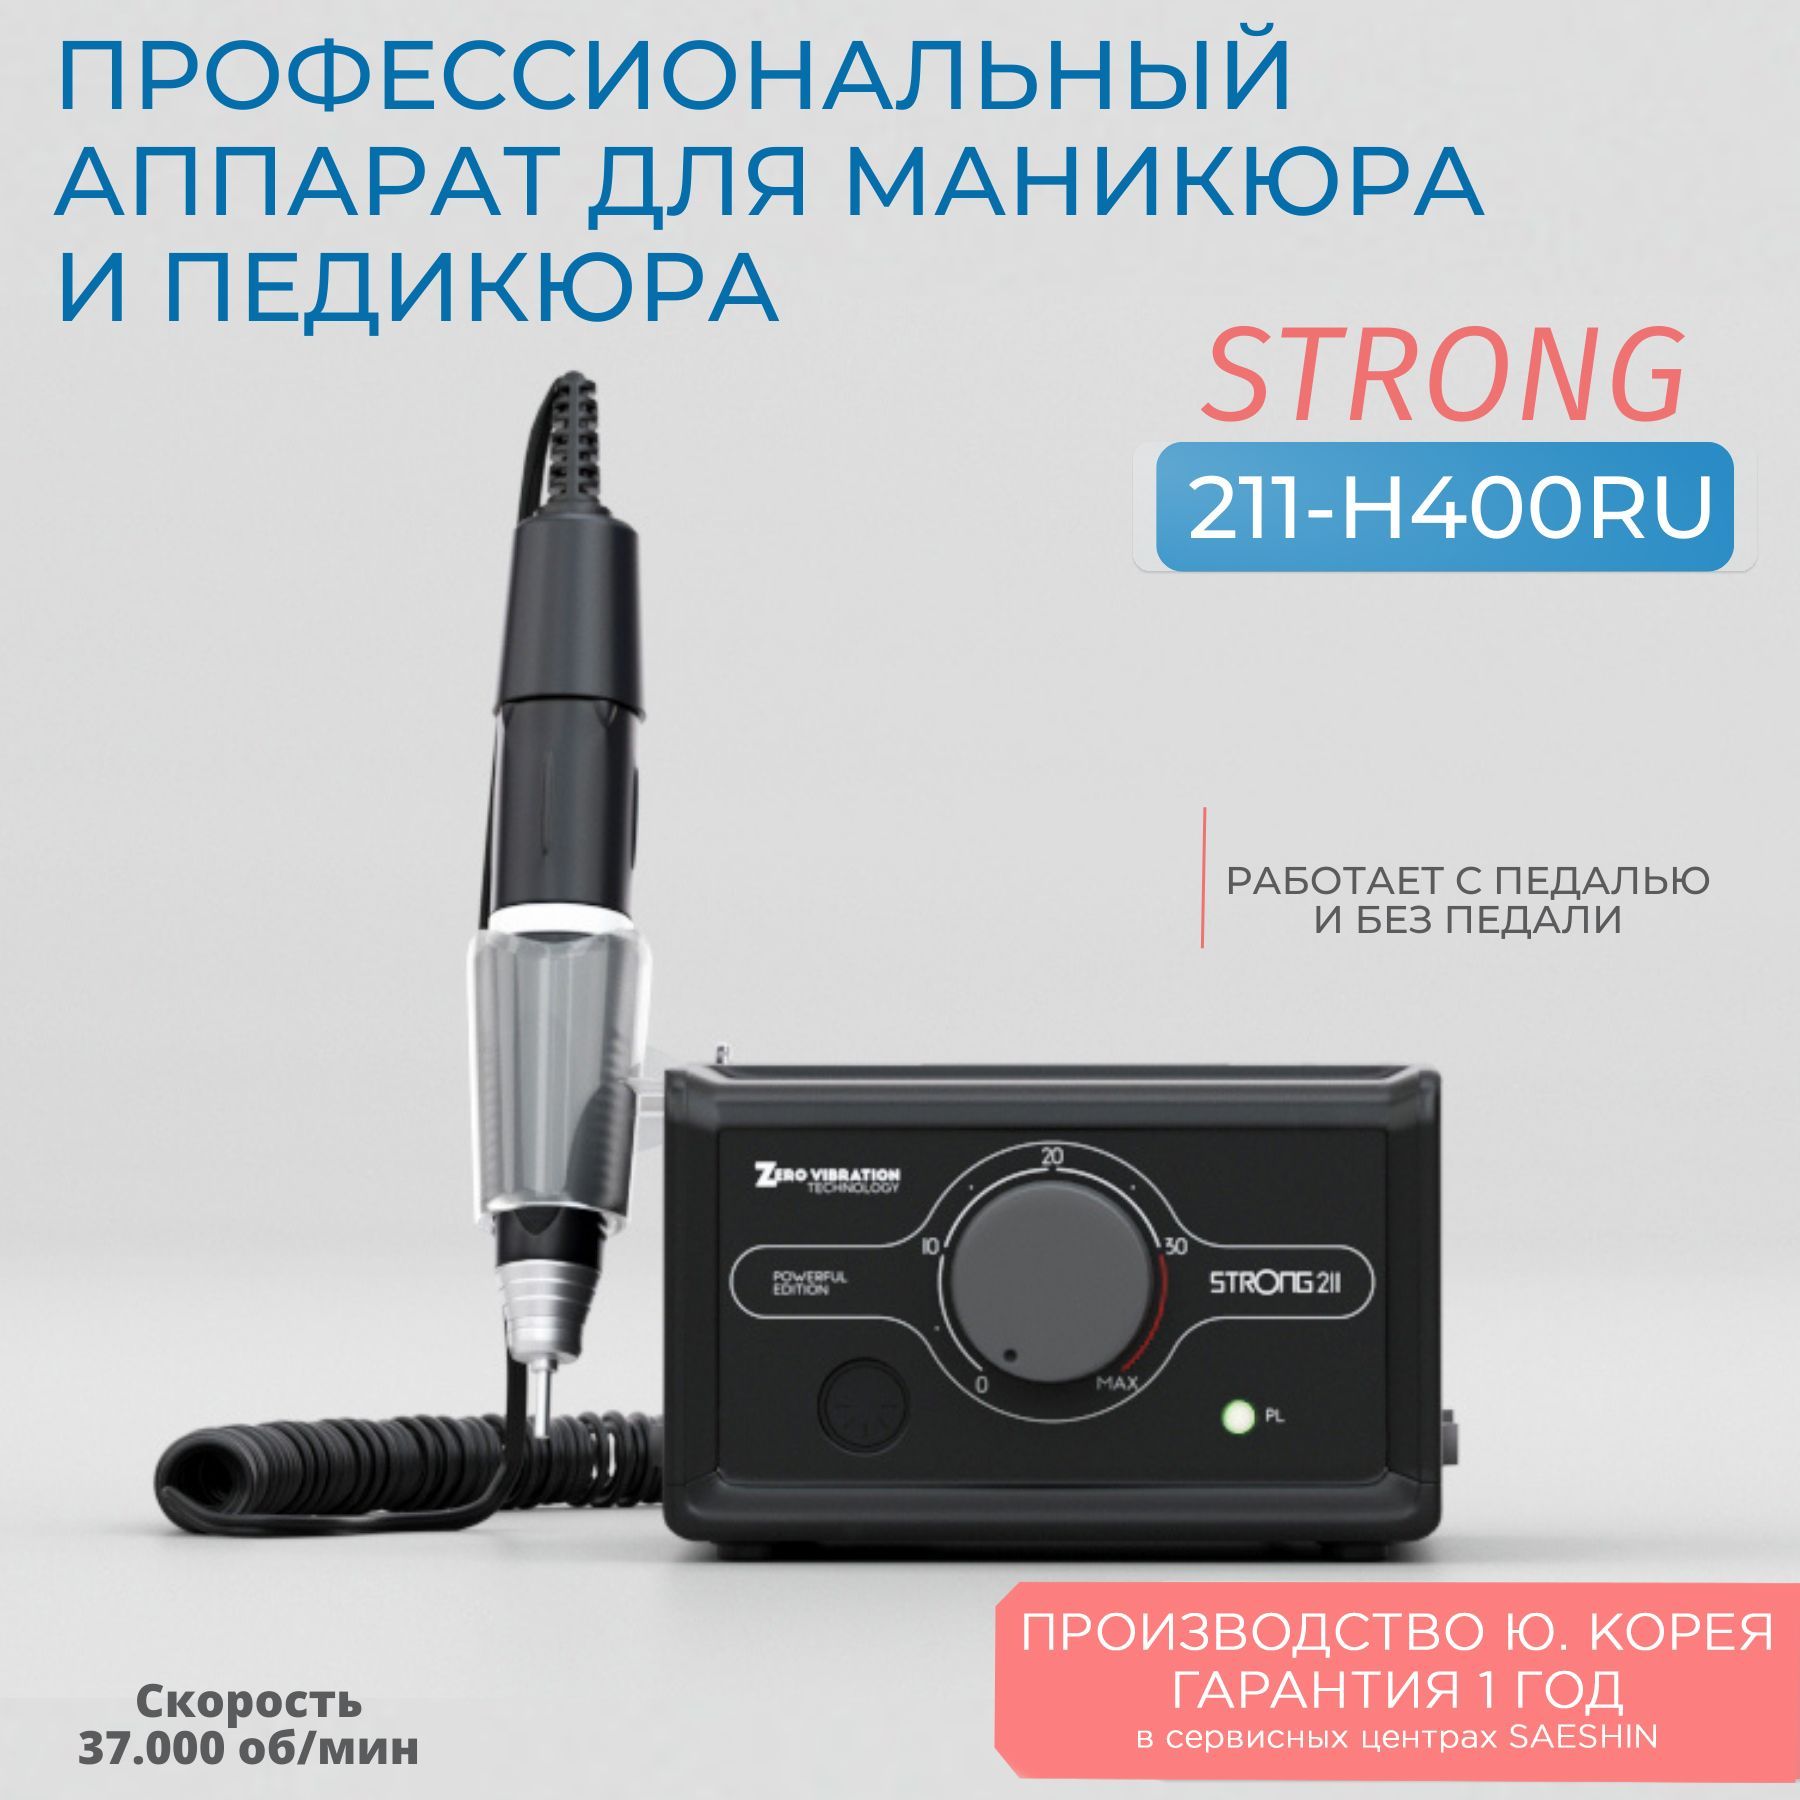 Аппарат для маникюра и педикюра Strong 211 H400RU без педали библия на русском языке